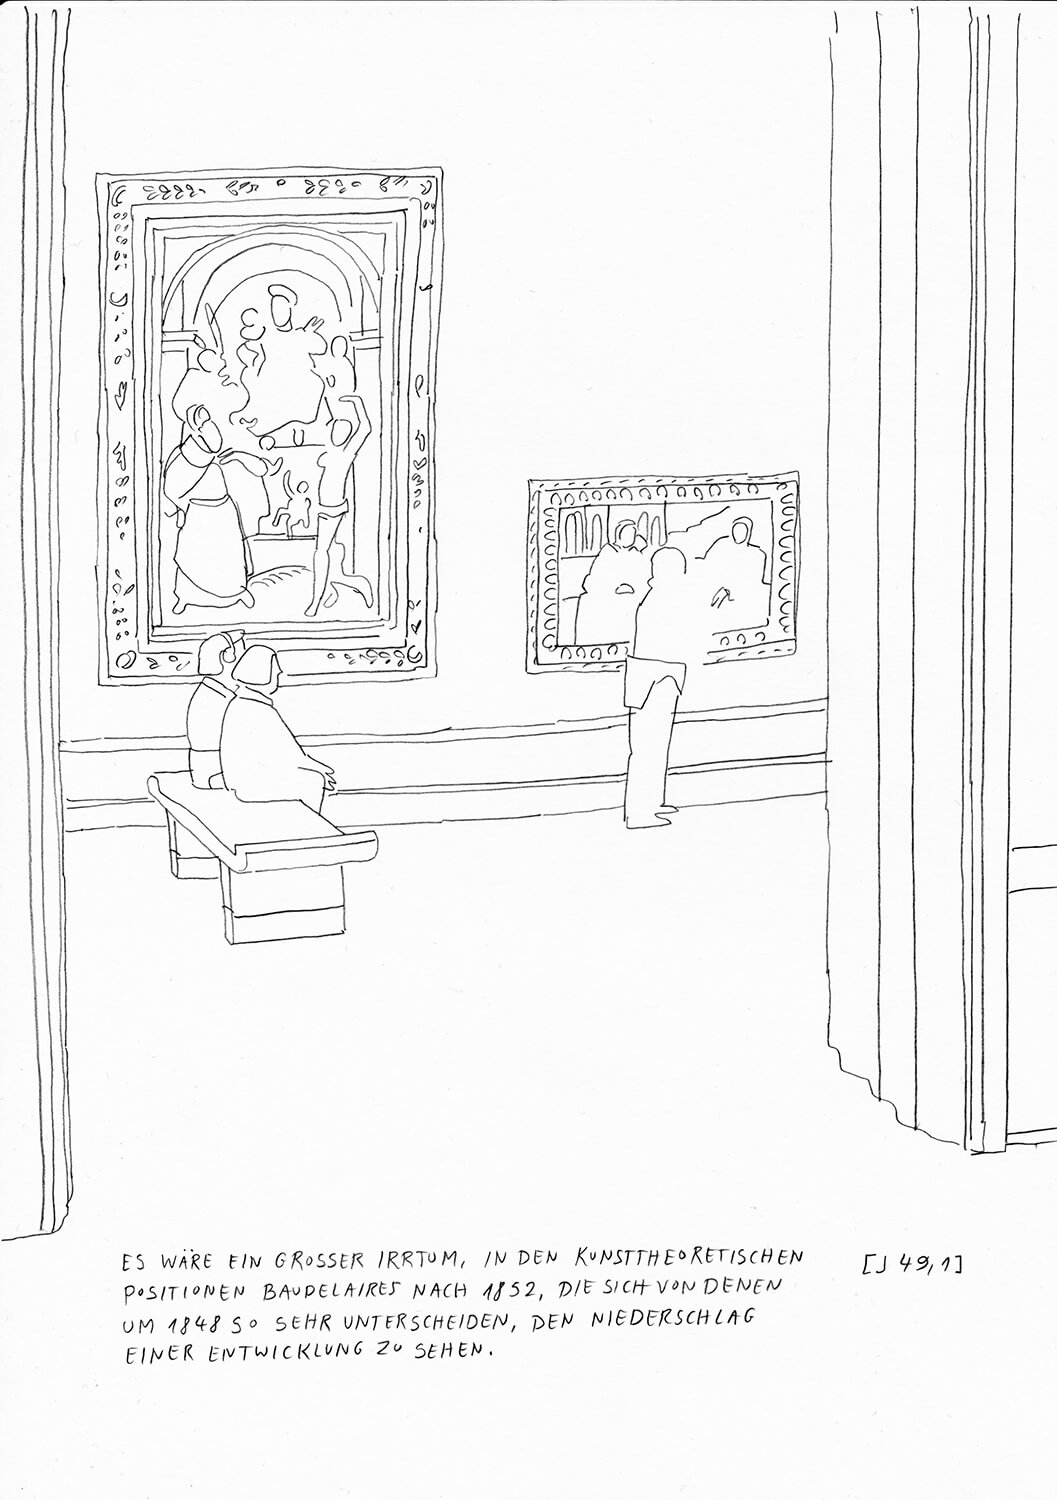 Matthias Beckmann, Passagen-Werk (84), 2019/2020, Bleistift auf Papier, 29,7 x 21 cm